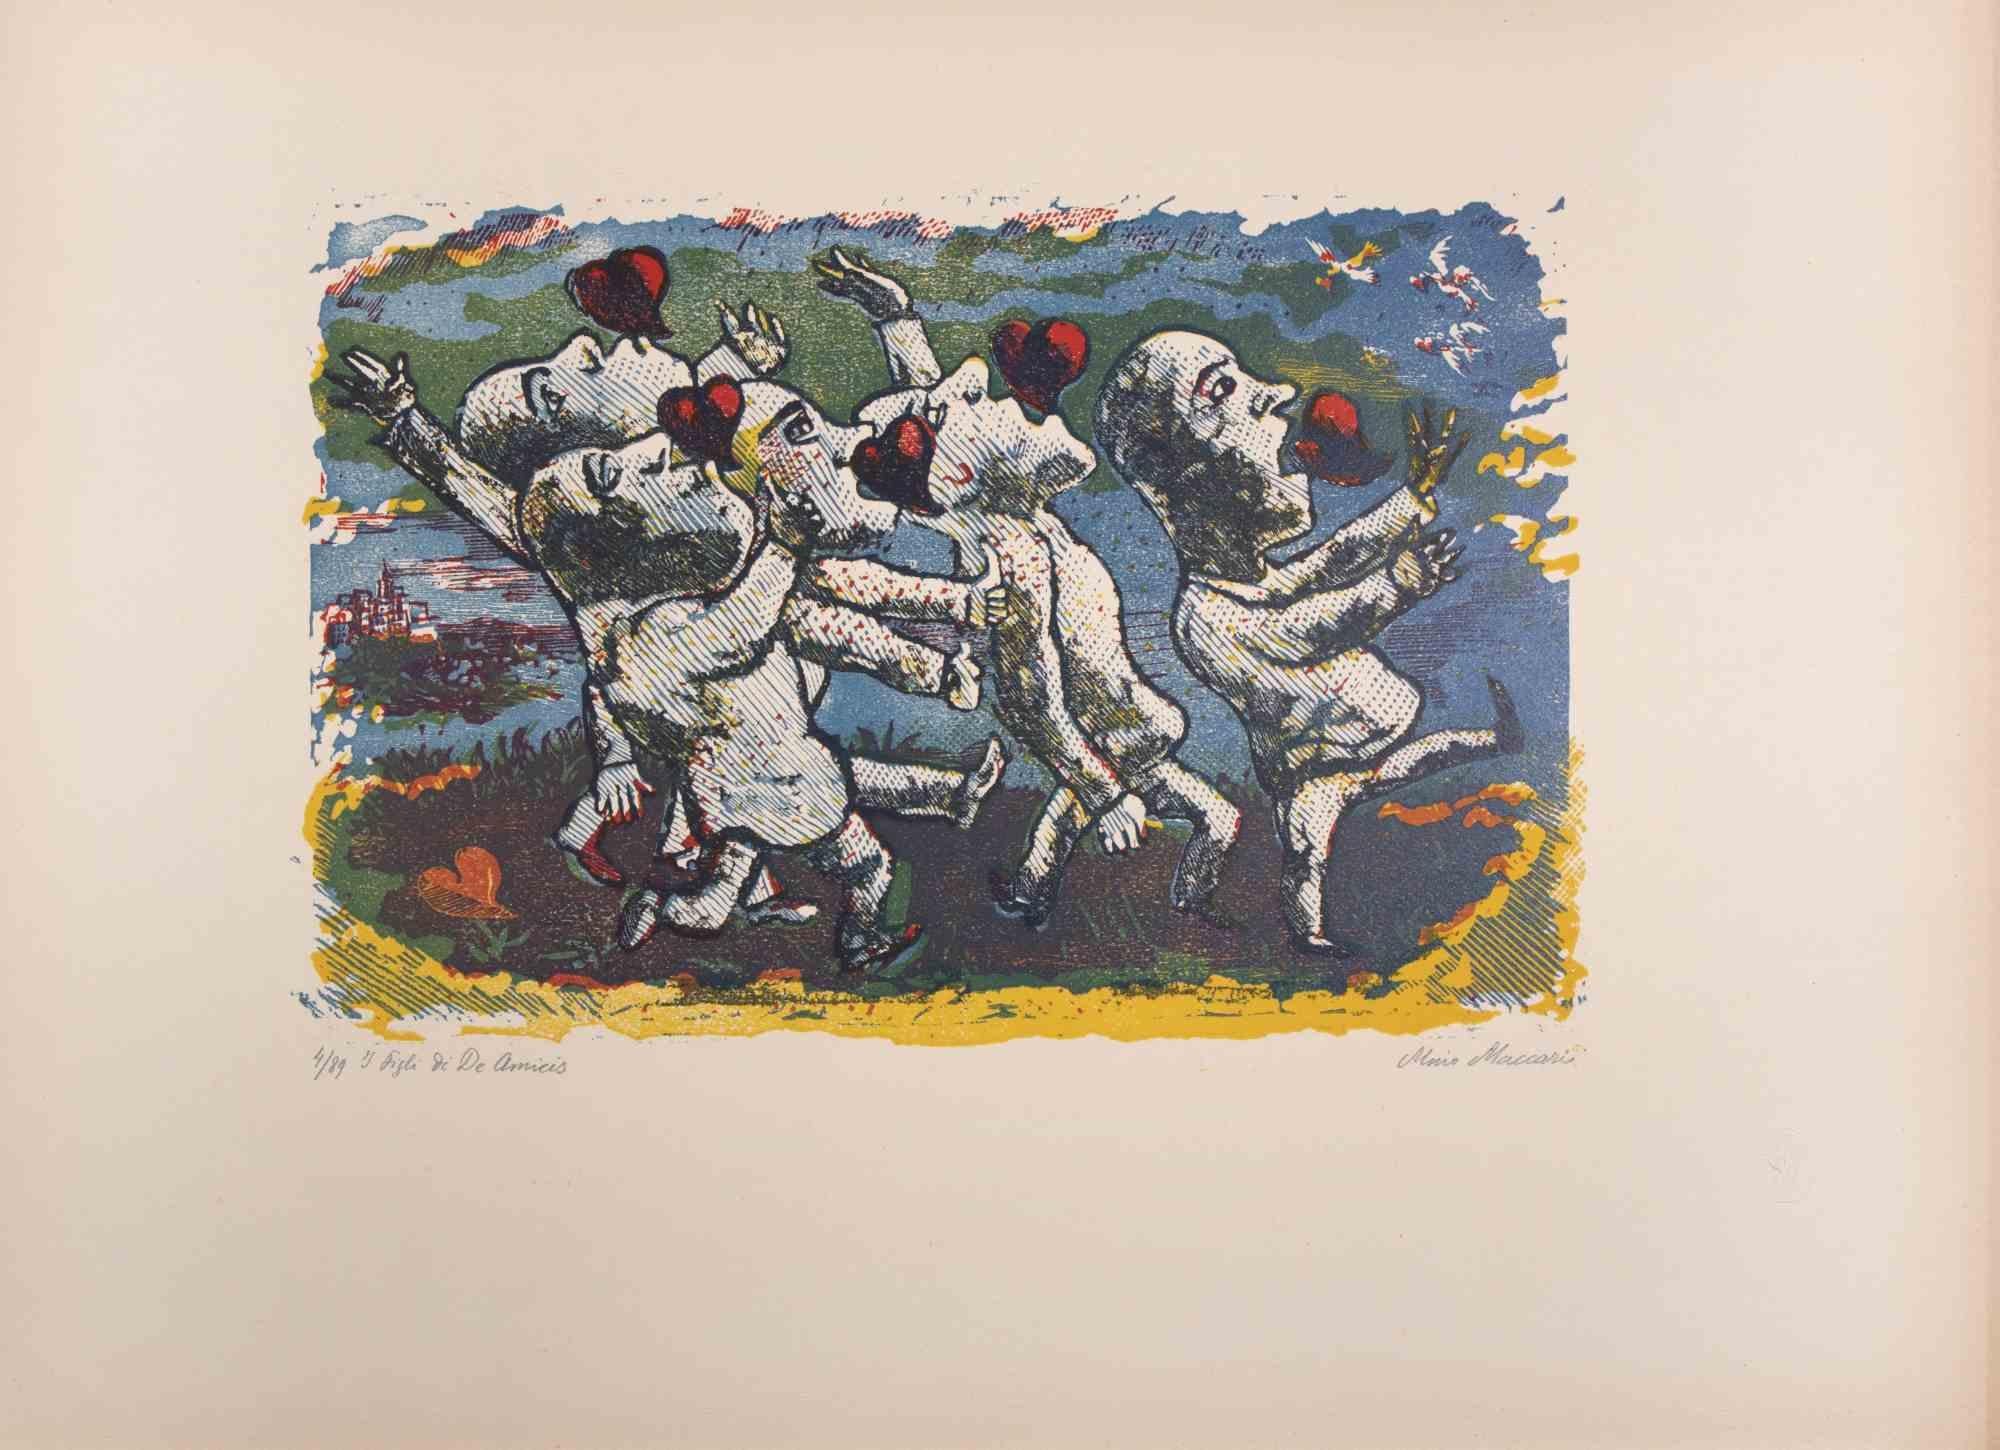 De Amicis Söhne ist ein Kunstwerk von Mino Maccari (1924-1989) aus dem Jahr 1943.

Farbiger Holzschnitt auf Papier. Unten handsigniert, nummeriert 4/89 Exemplare und am linken Rand betitelt.

Gute Bedingungen.

Mino Maccari (Siena, 1924-Rom, 16.